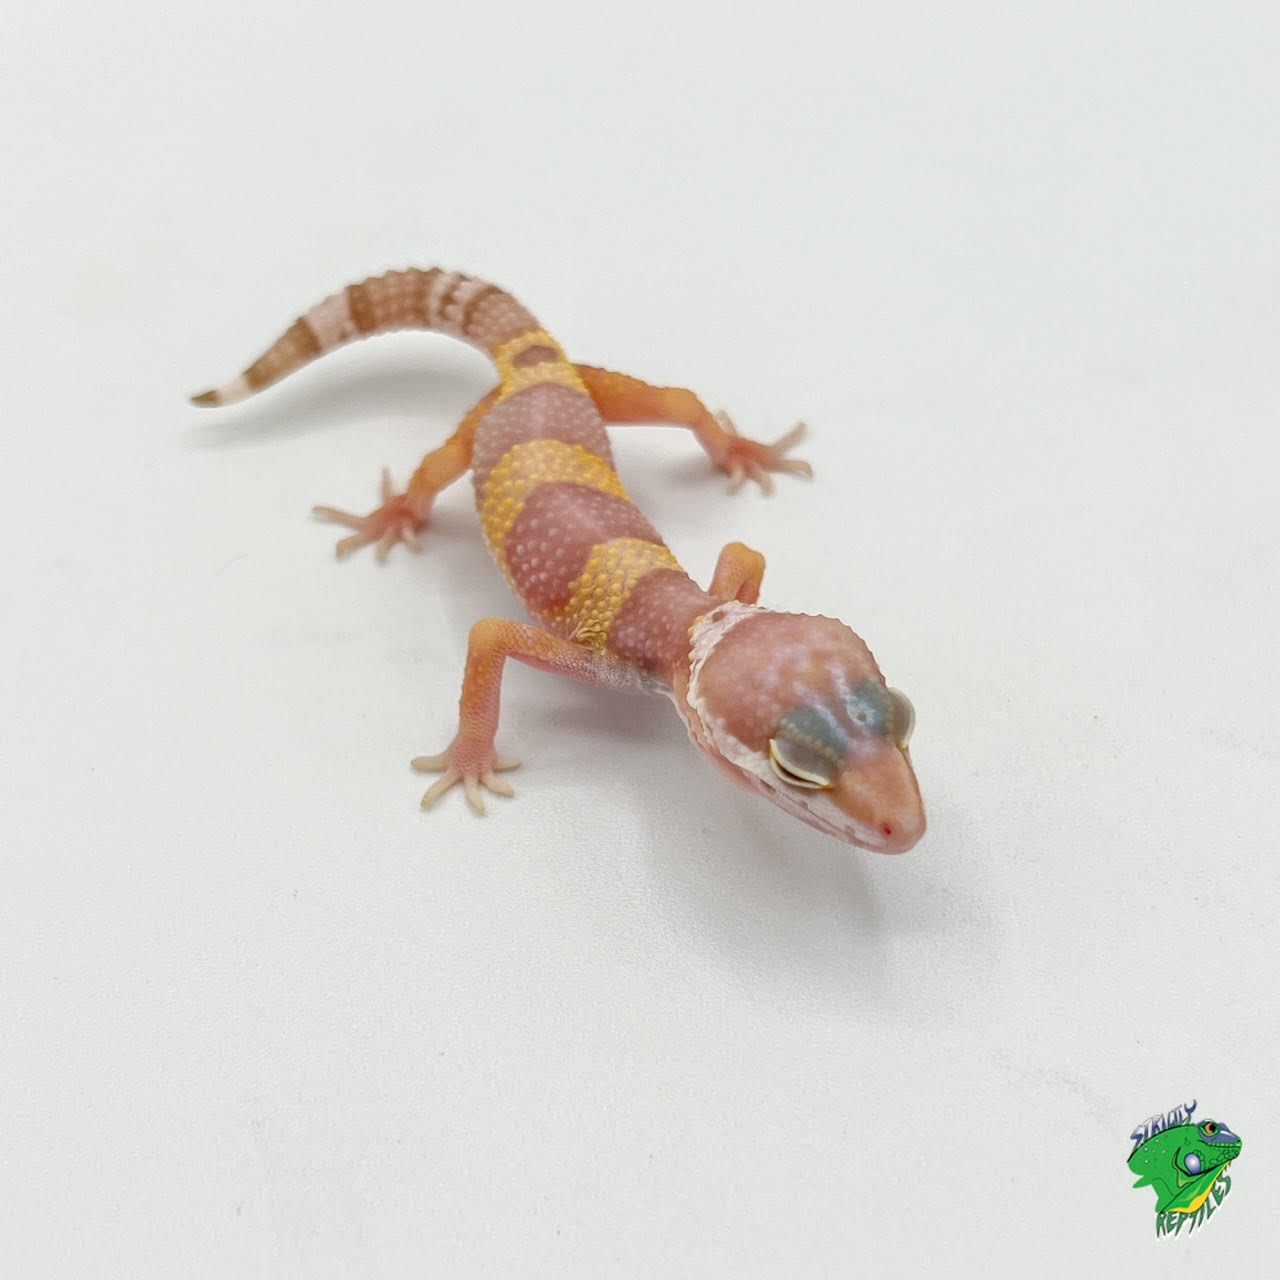 leopard gecko hatchling